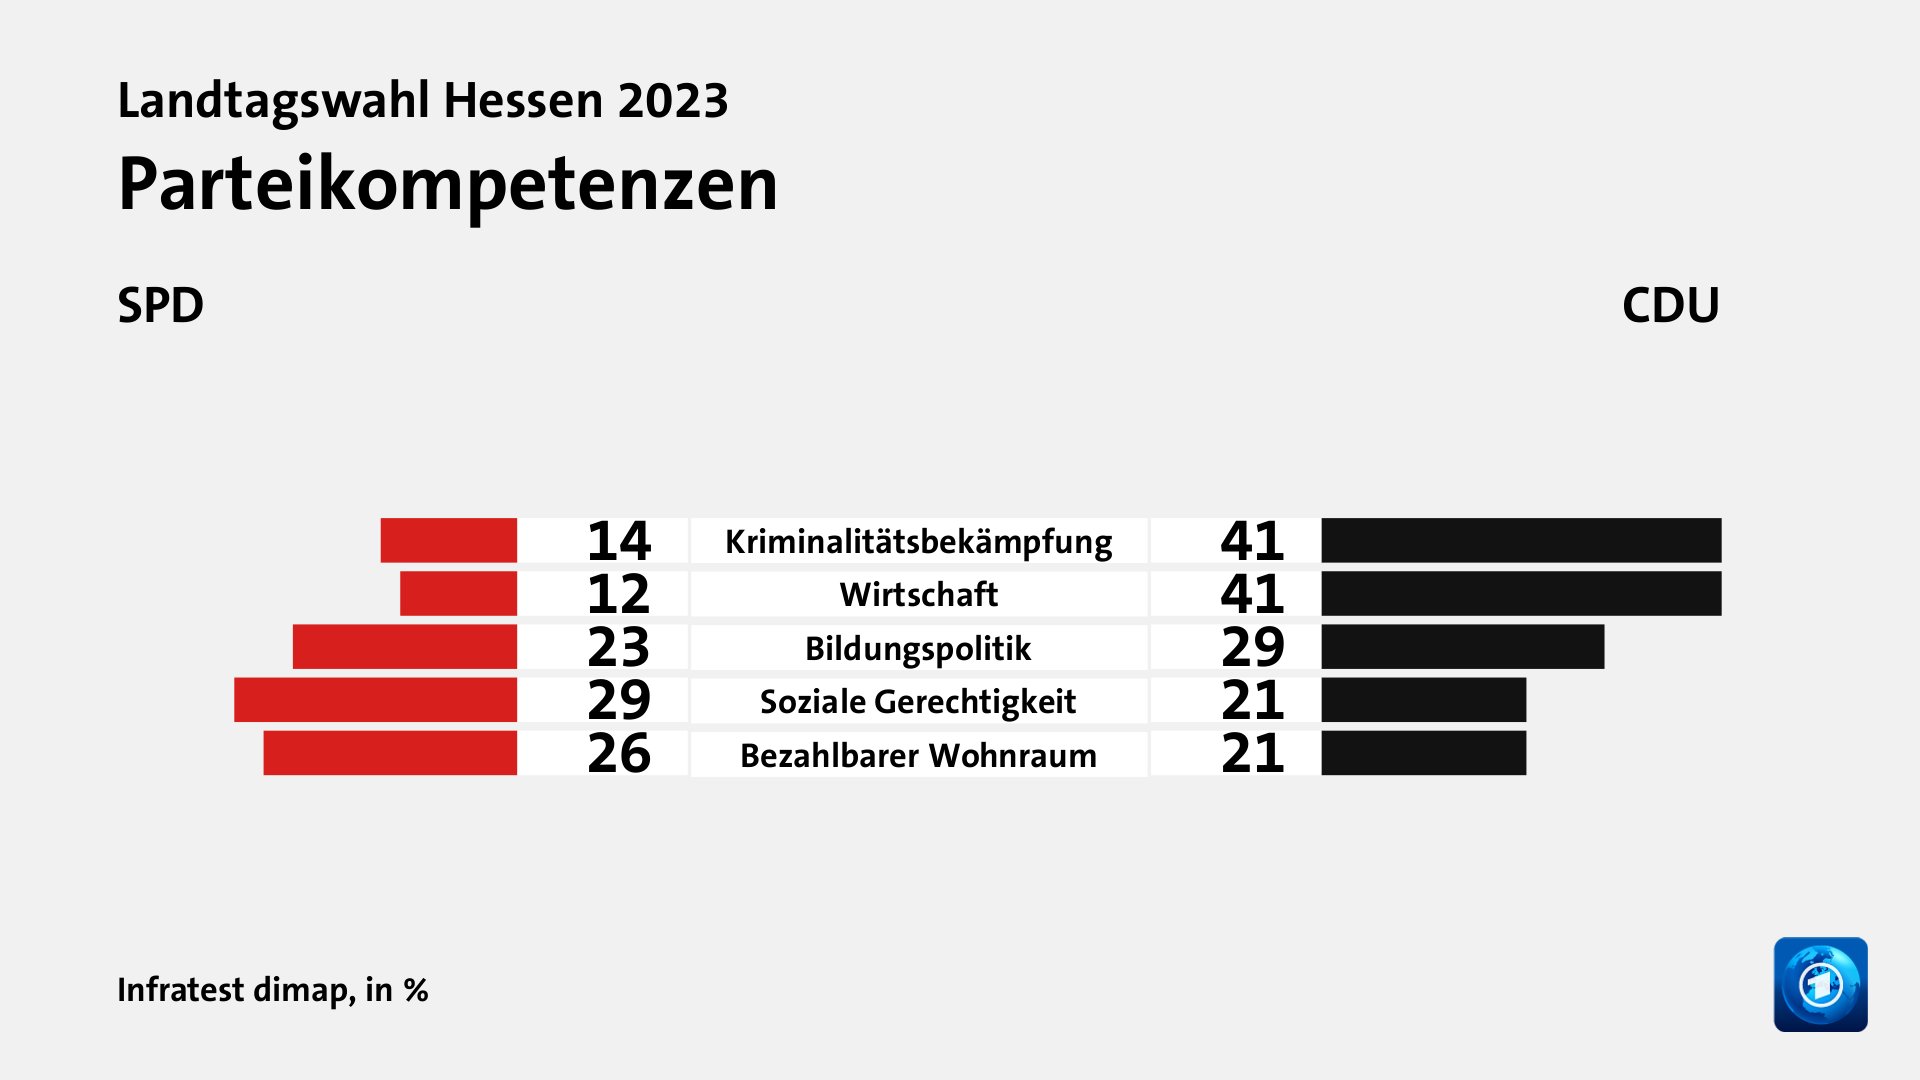 Parteikompetenzen (in %) Kriminalitätsbekämpfung: SPD 14, CDU 41; Wirtschaft: SPD 12, CDU 41; Bildungspolitik: SPD 23, CDU 29; Soziale Gerechtigkeit: SPD 29, CDU 21; Bezahlbarer Wohnraum: SPD 26, CDU 21; Quelle: Infratest dimap